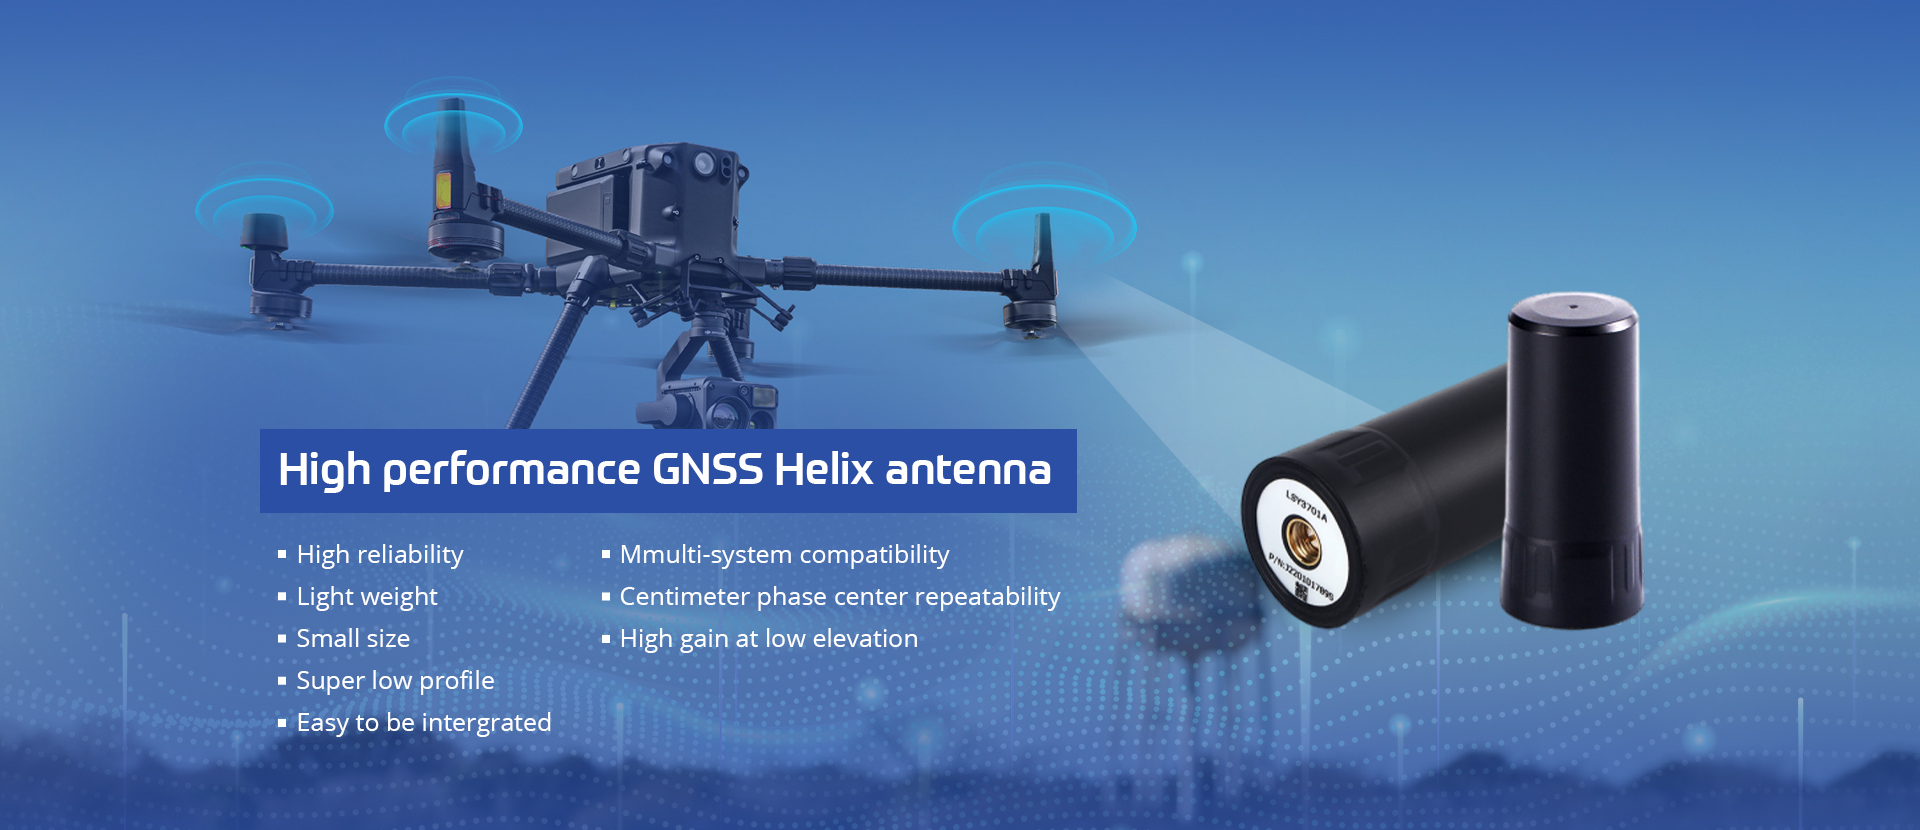 High performance GNSS Helix antenna